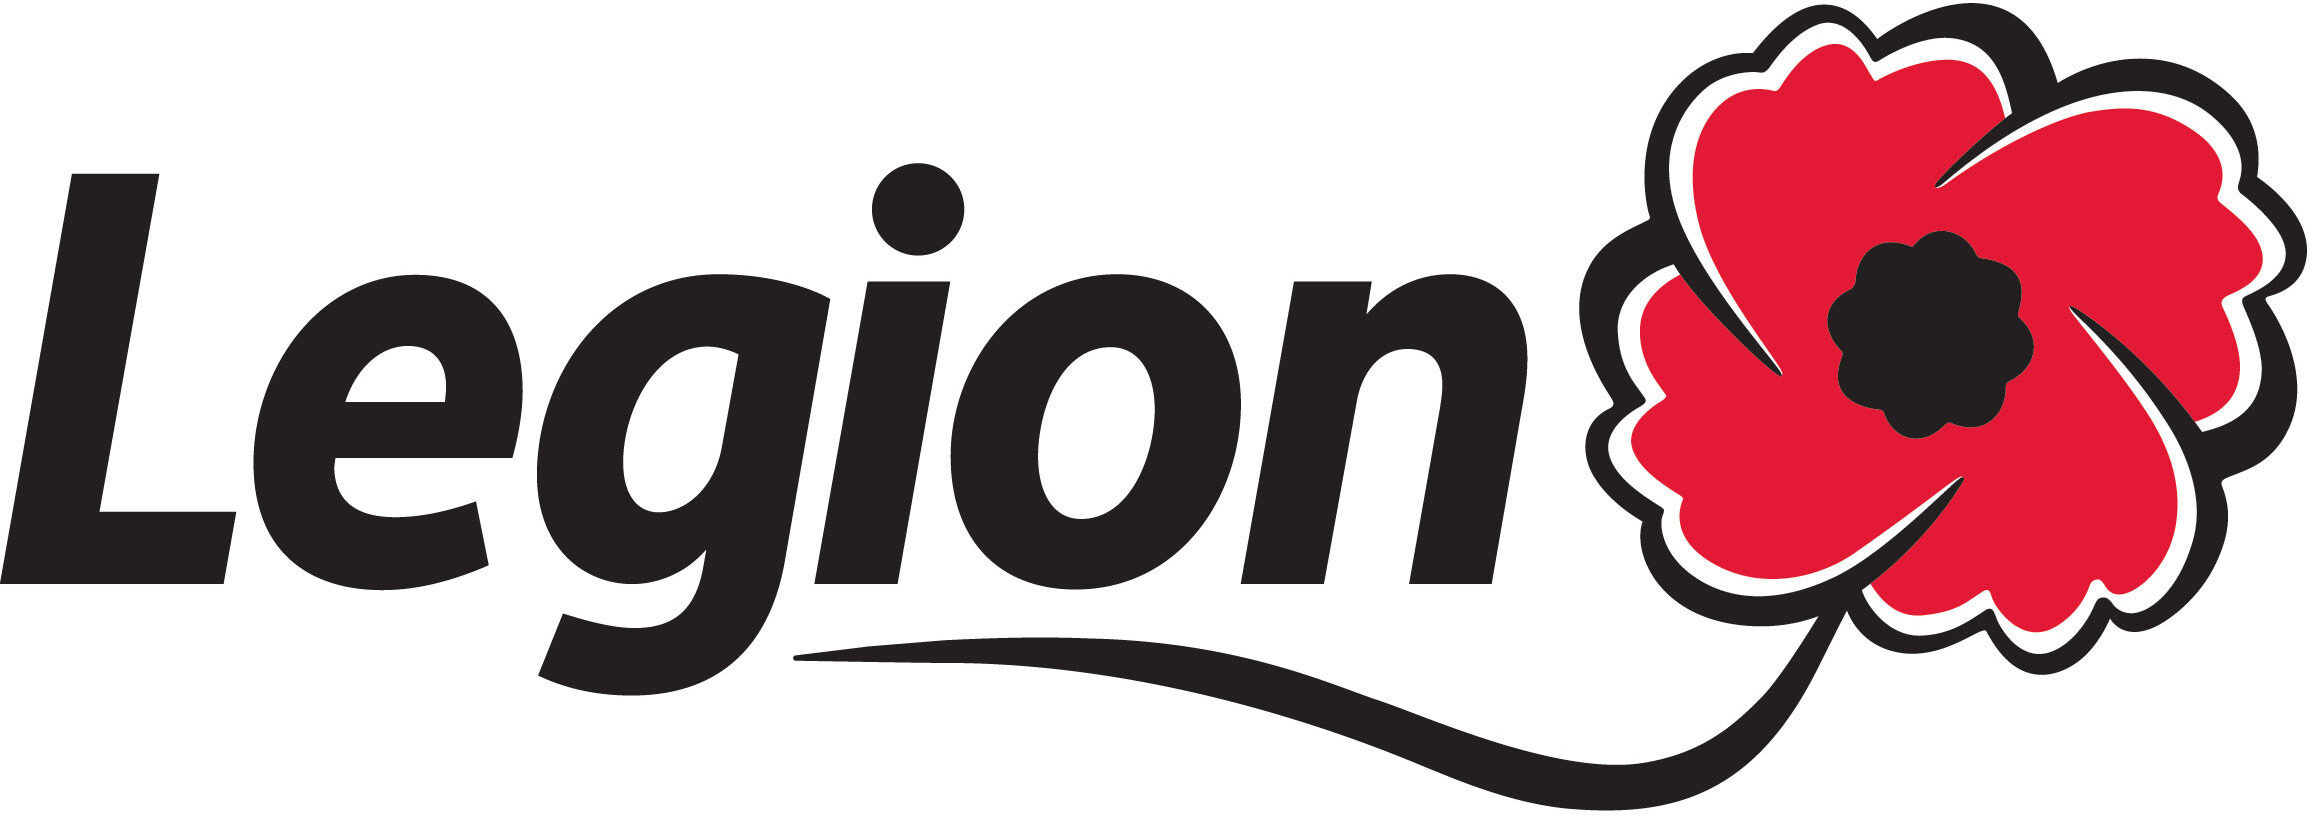 Sutton Legion